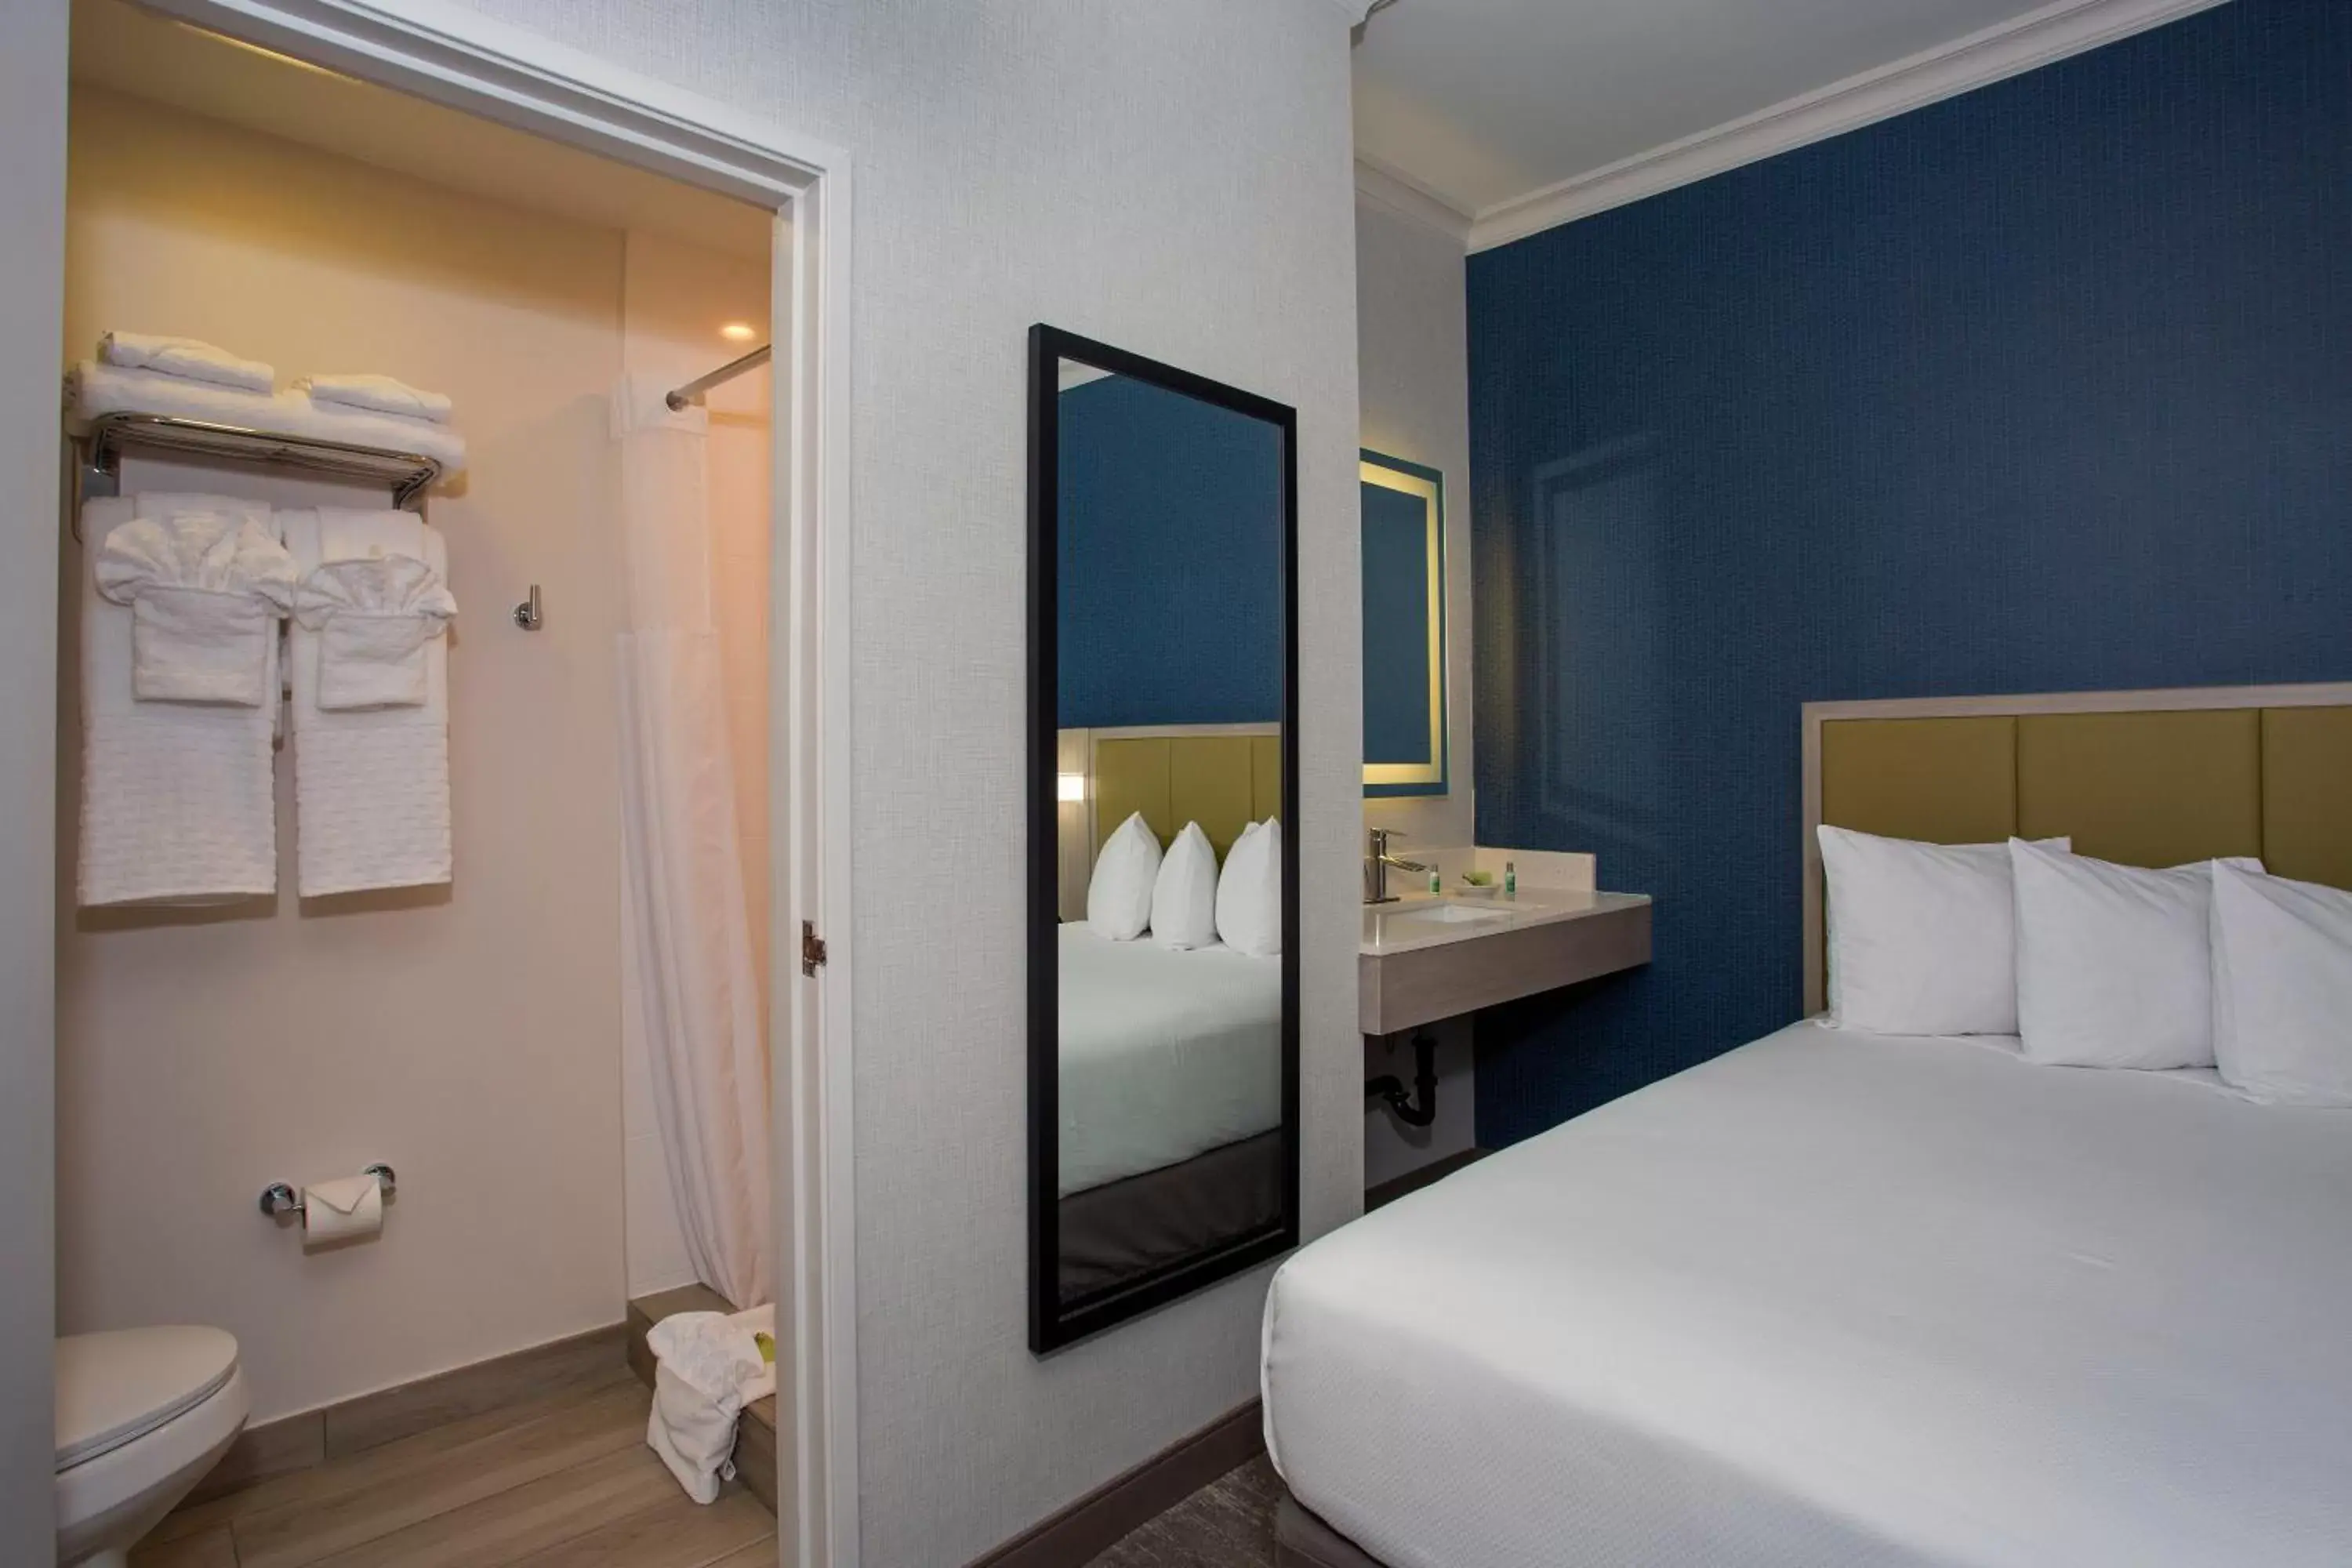 Bedroom, Bathroom in SureStay Hotel by Best Western Santa Monica